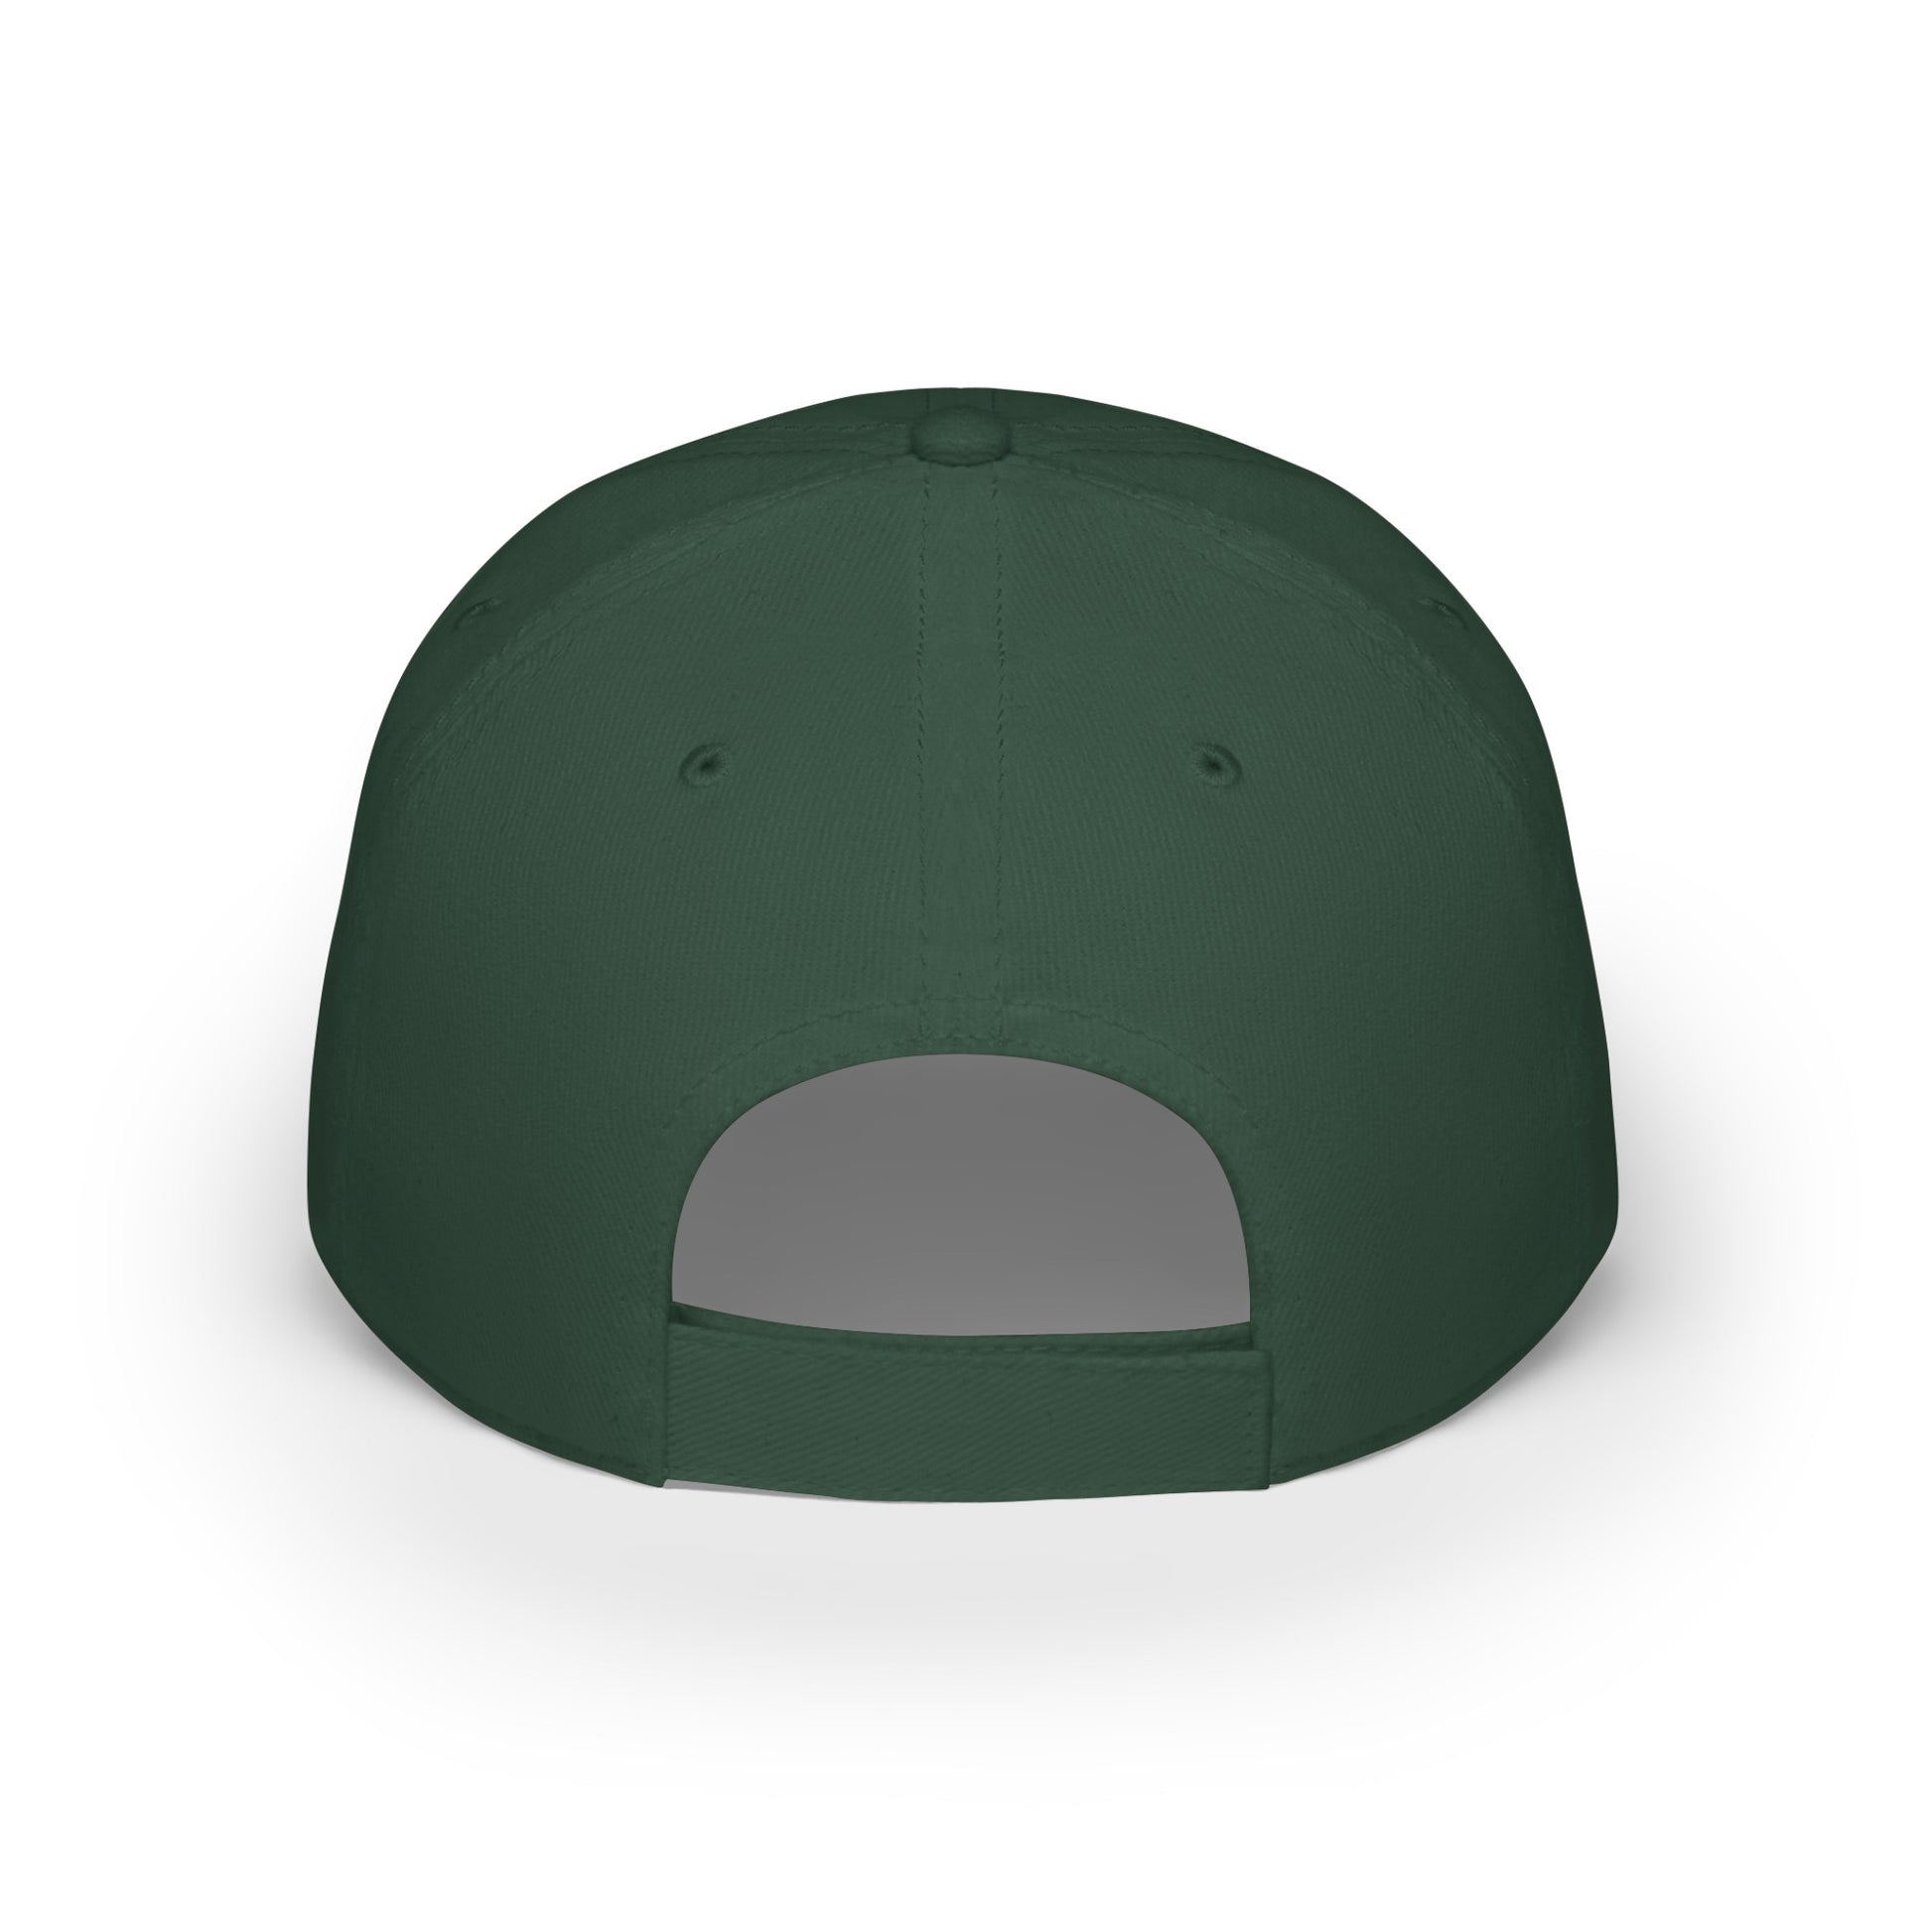 MDBTDJ#AJGRC - Low Profile Baseball Cap Tattooed Dj's Limited Edition, Hats, Tattooed Djs Shop